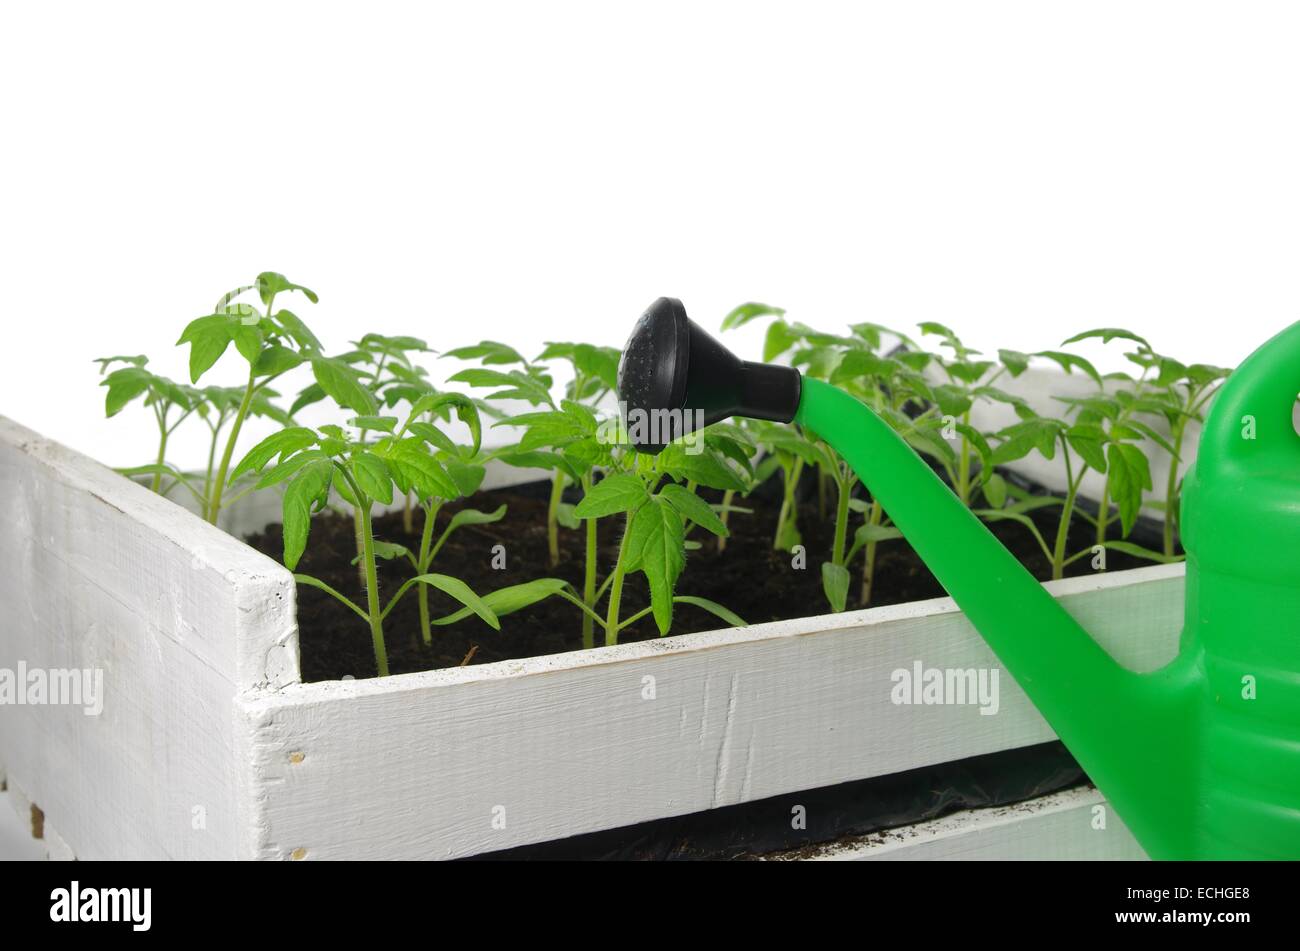 Les jeunes plantules de tomate sur un fond blanc Banque D'Images